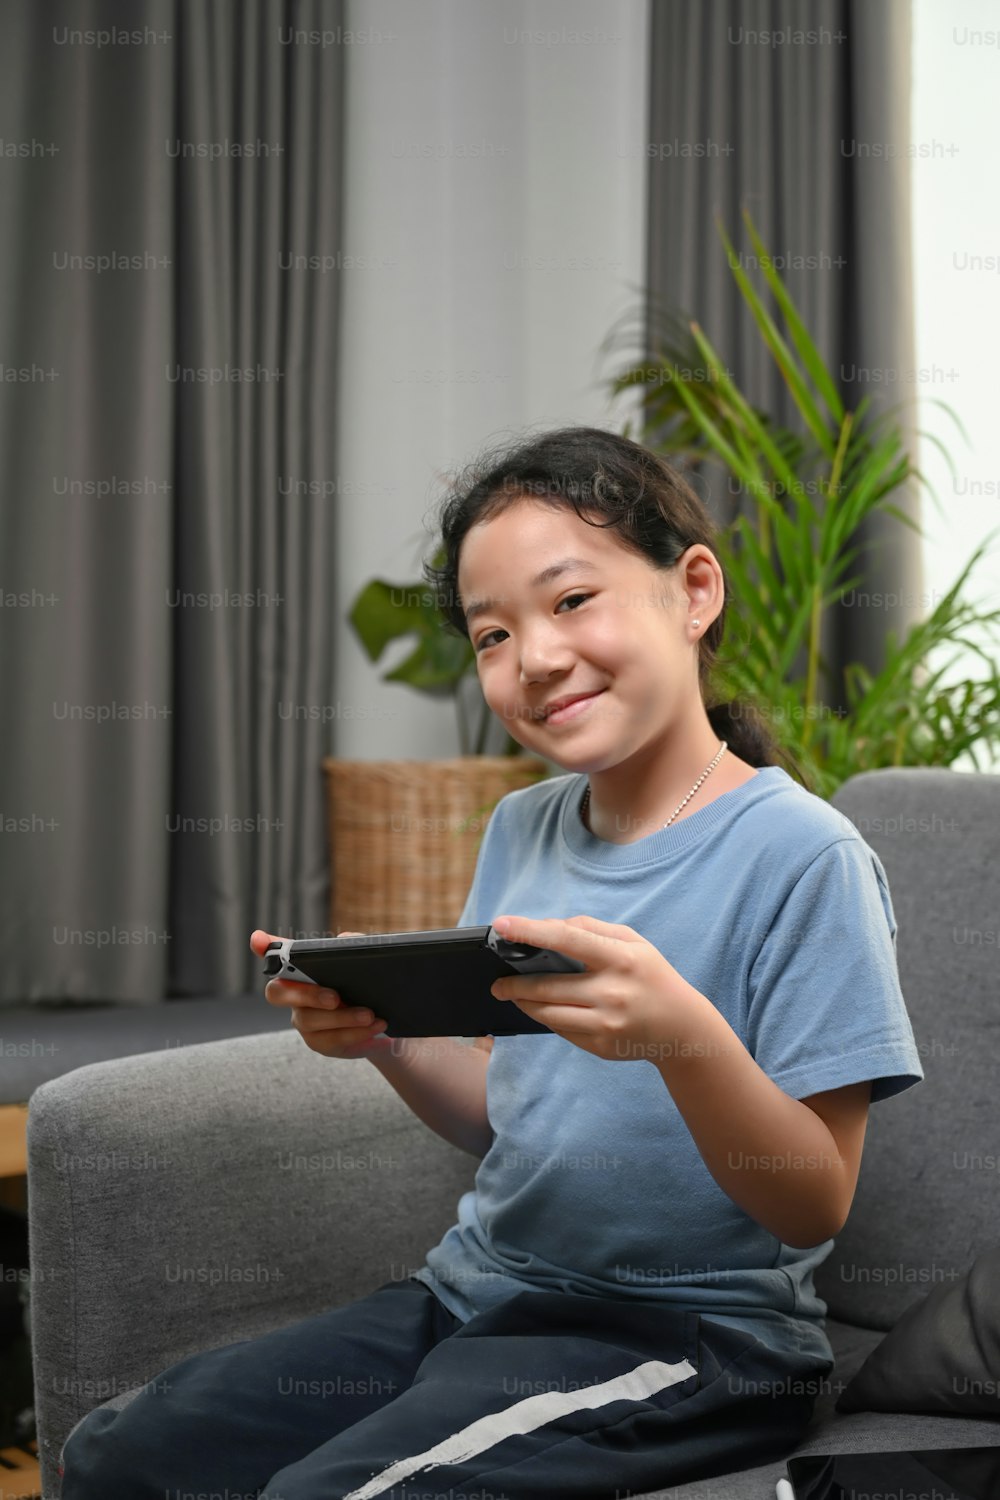 Retrato da menina feliz que joga videogame enquanto está sentada no sofá em casa.